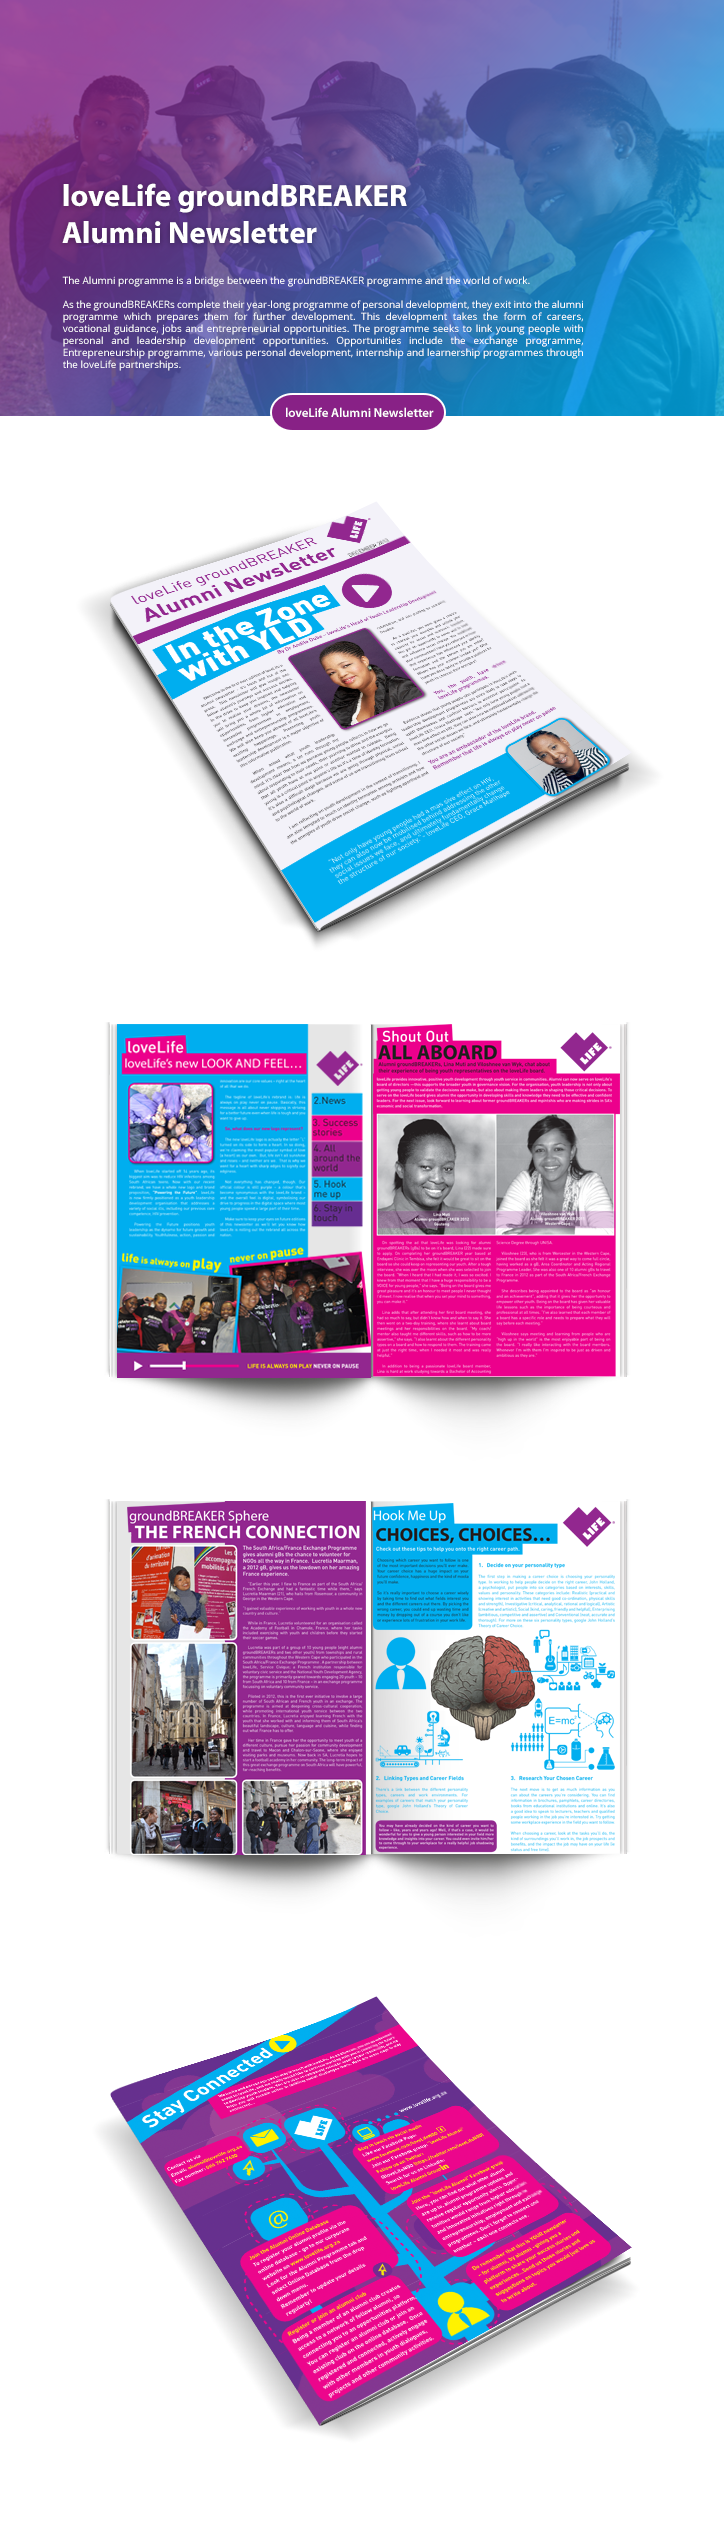 lovelife groundbreaker Kwambele Social Makerting Newsletter Design graphic design 